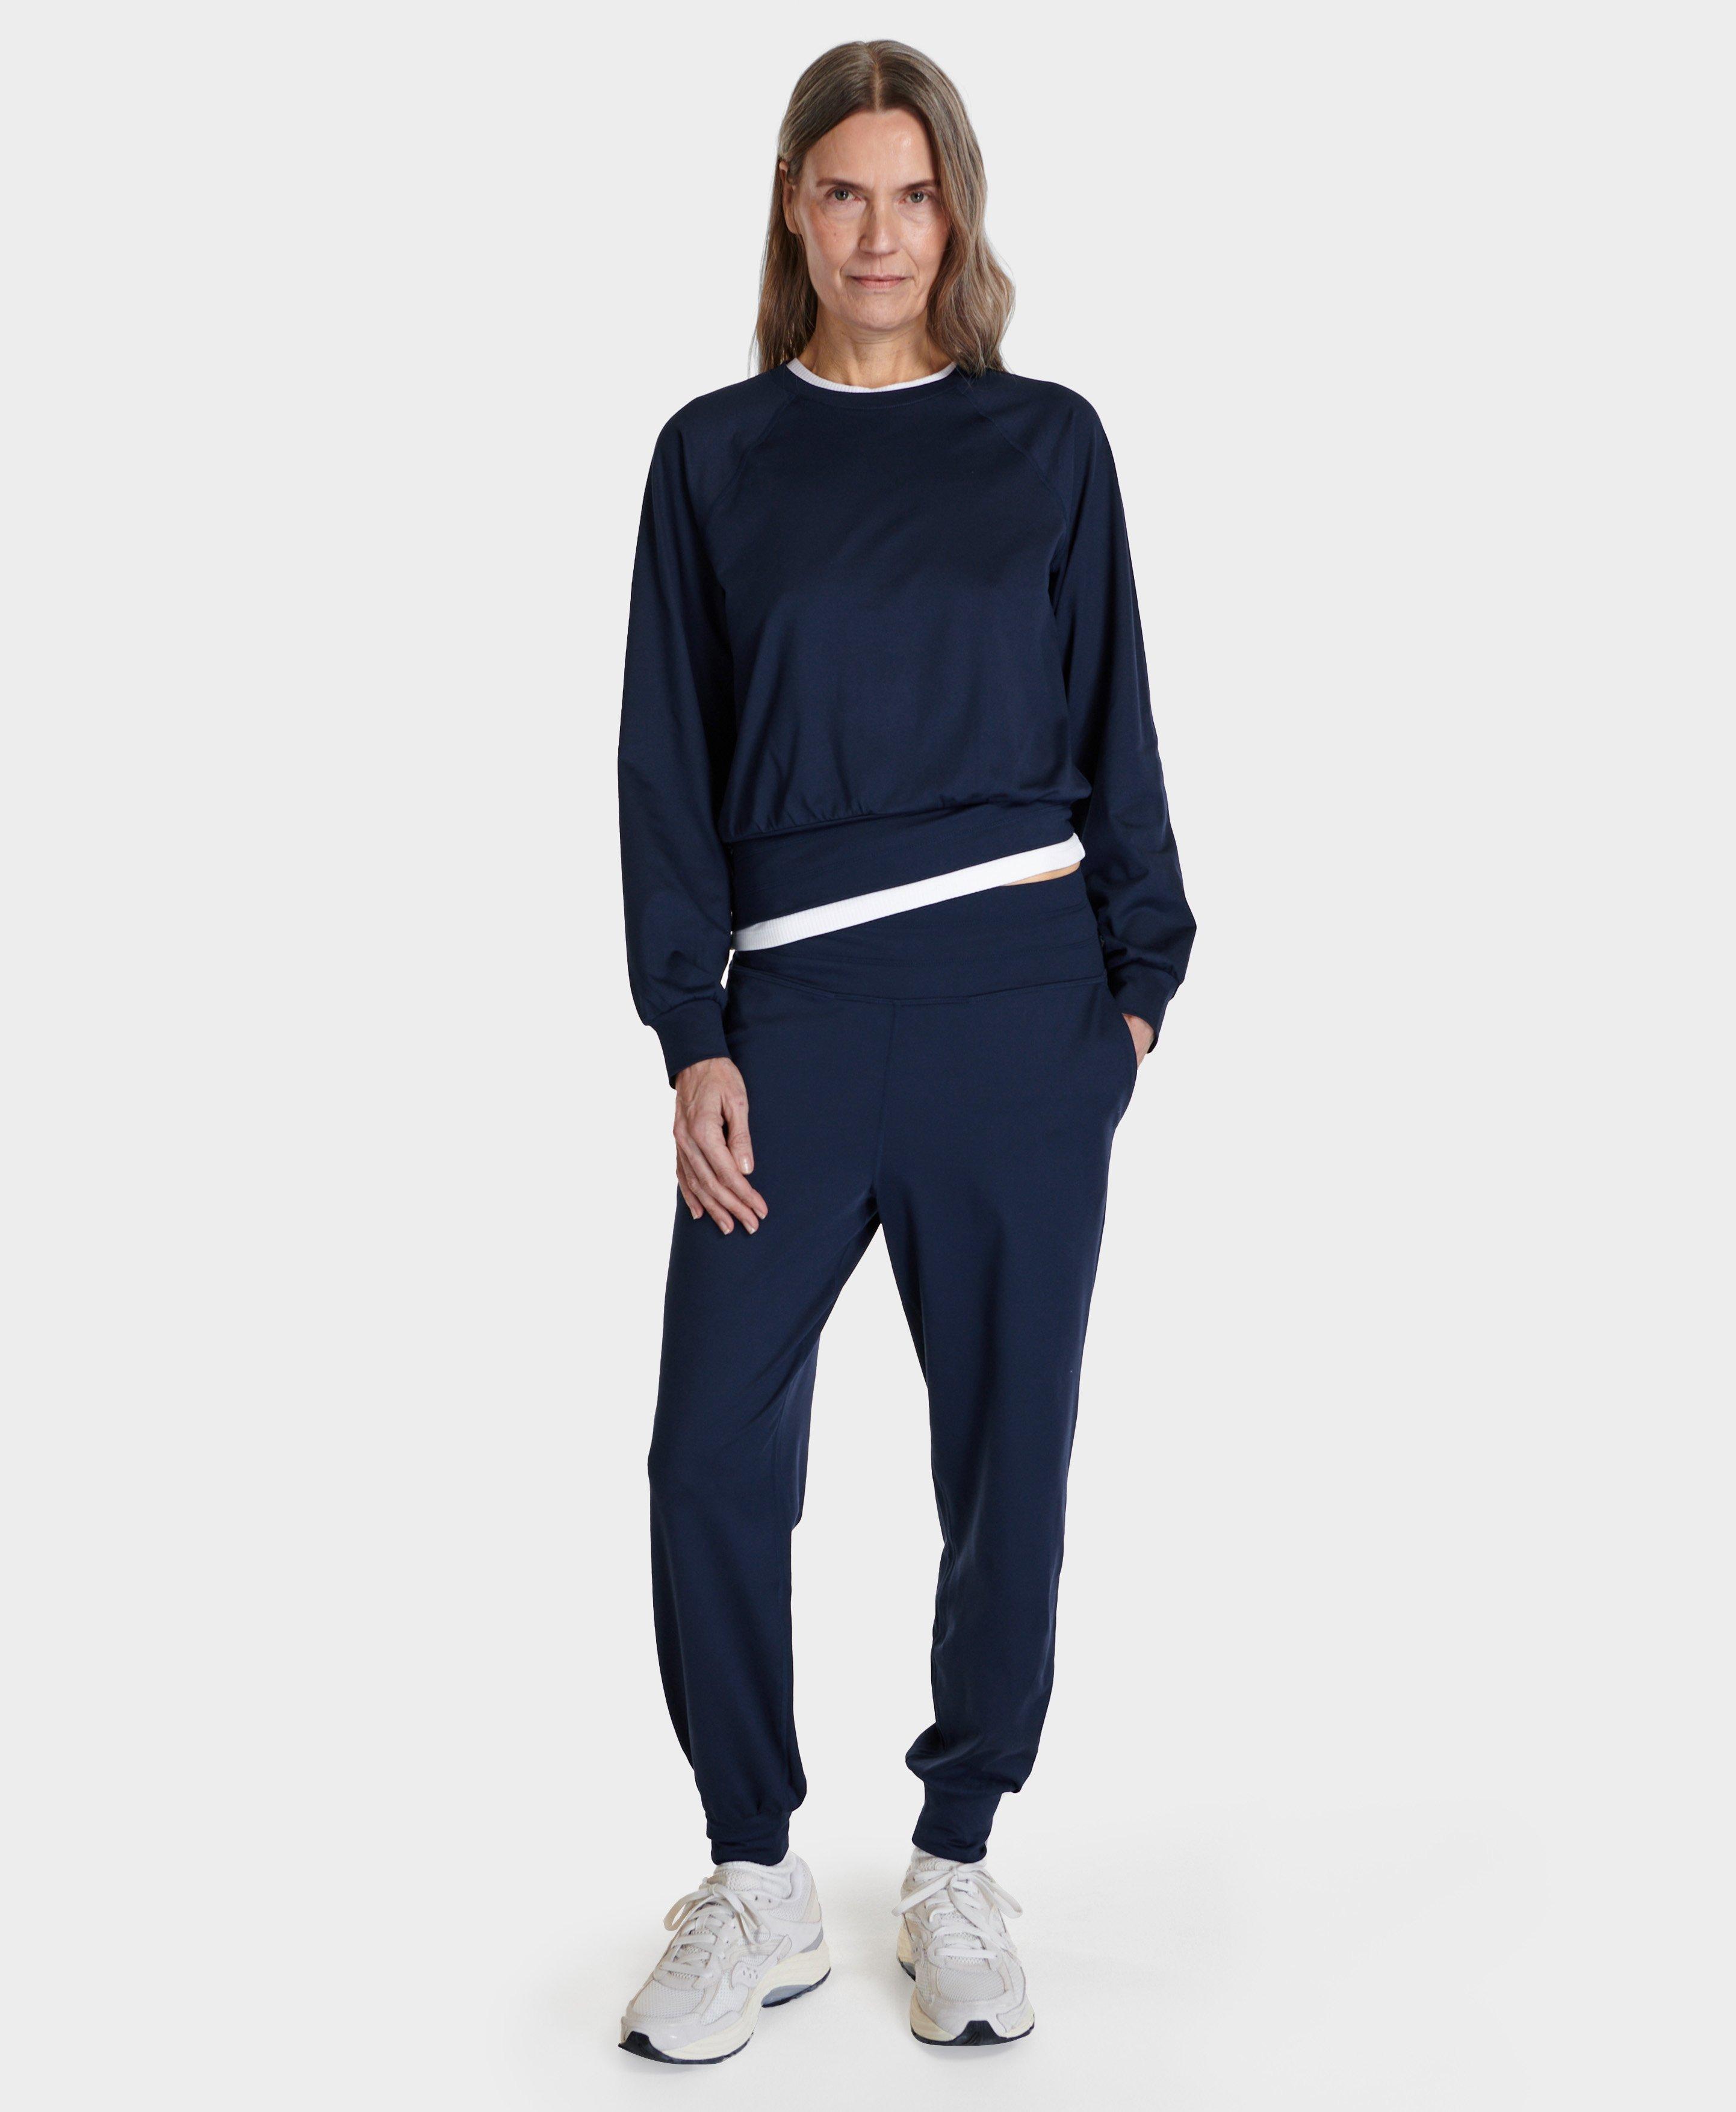 Gaia Yoga Jumpsuit - Navy Blue, Women's Dresses and Jumpsuits